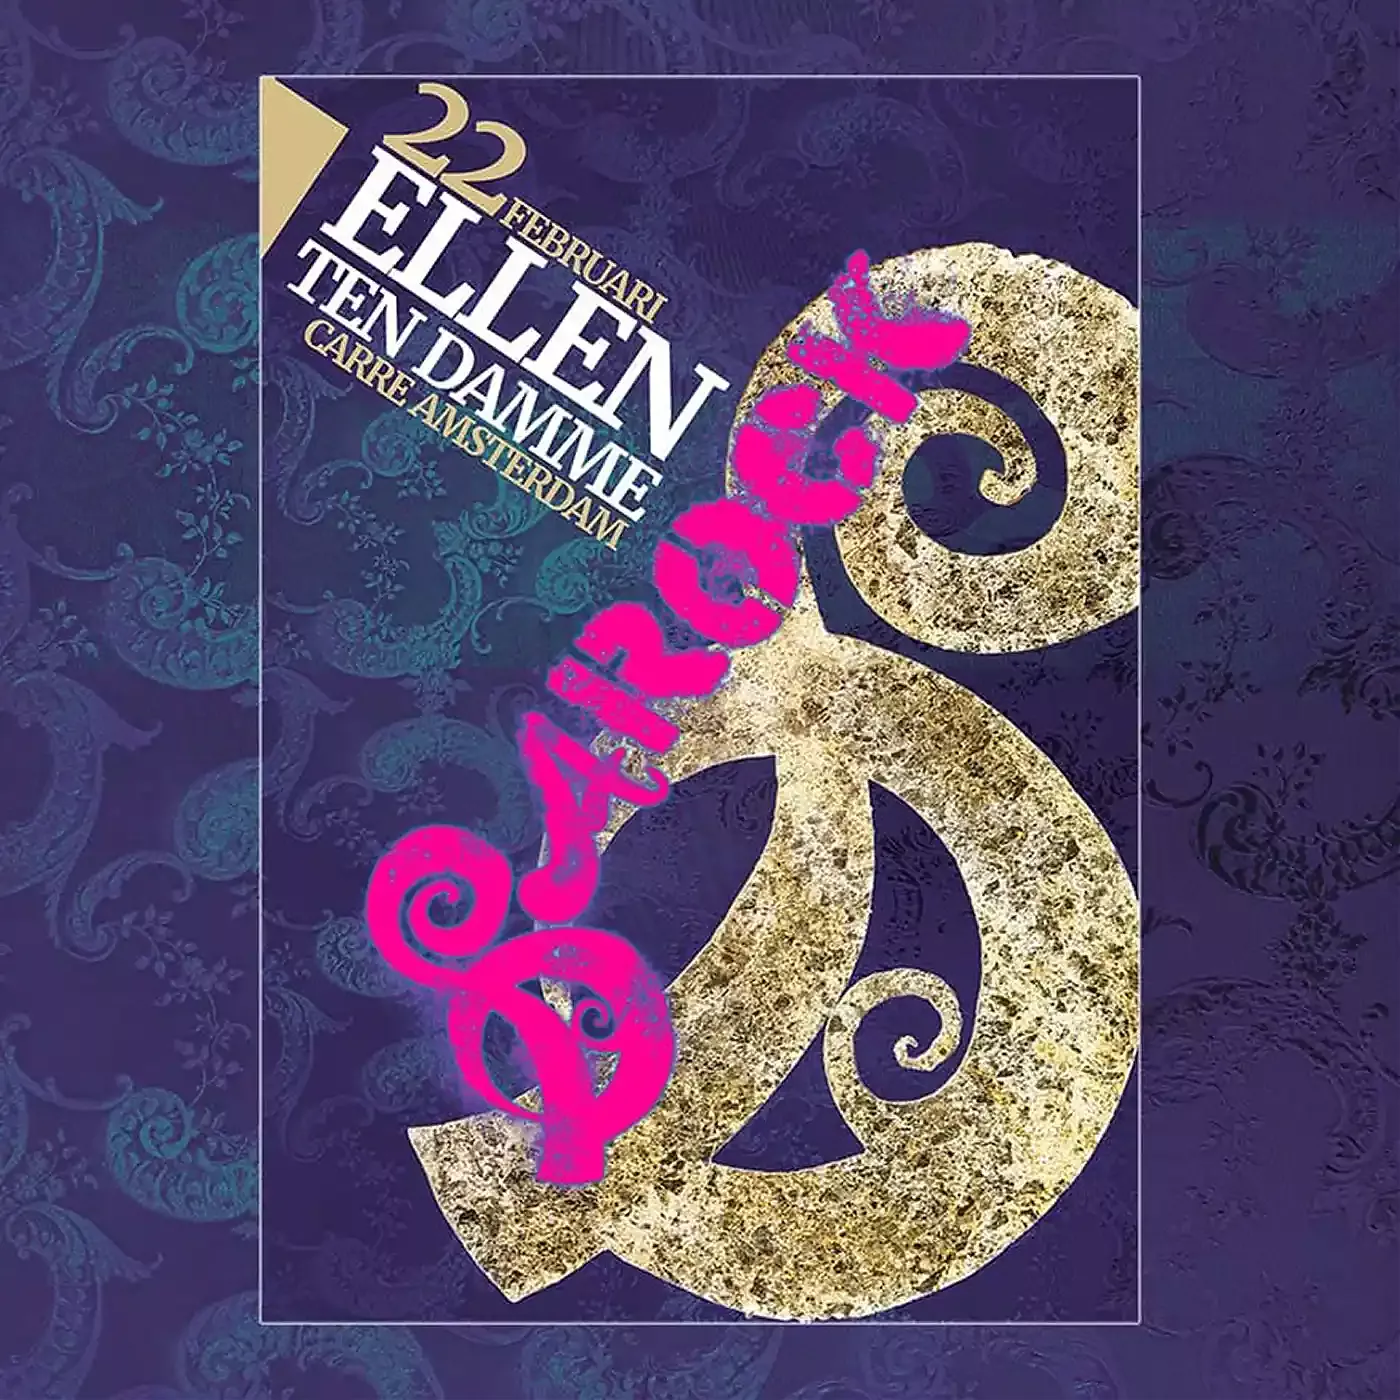 Ontwerp voor een poster van de theatertour van Ellen Ten Damme. Papierkunst